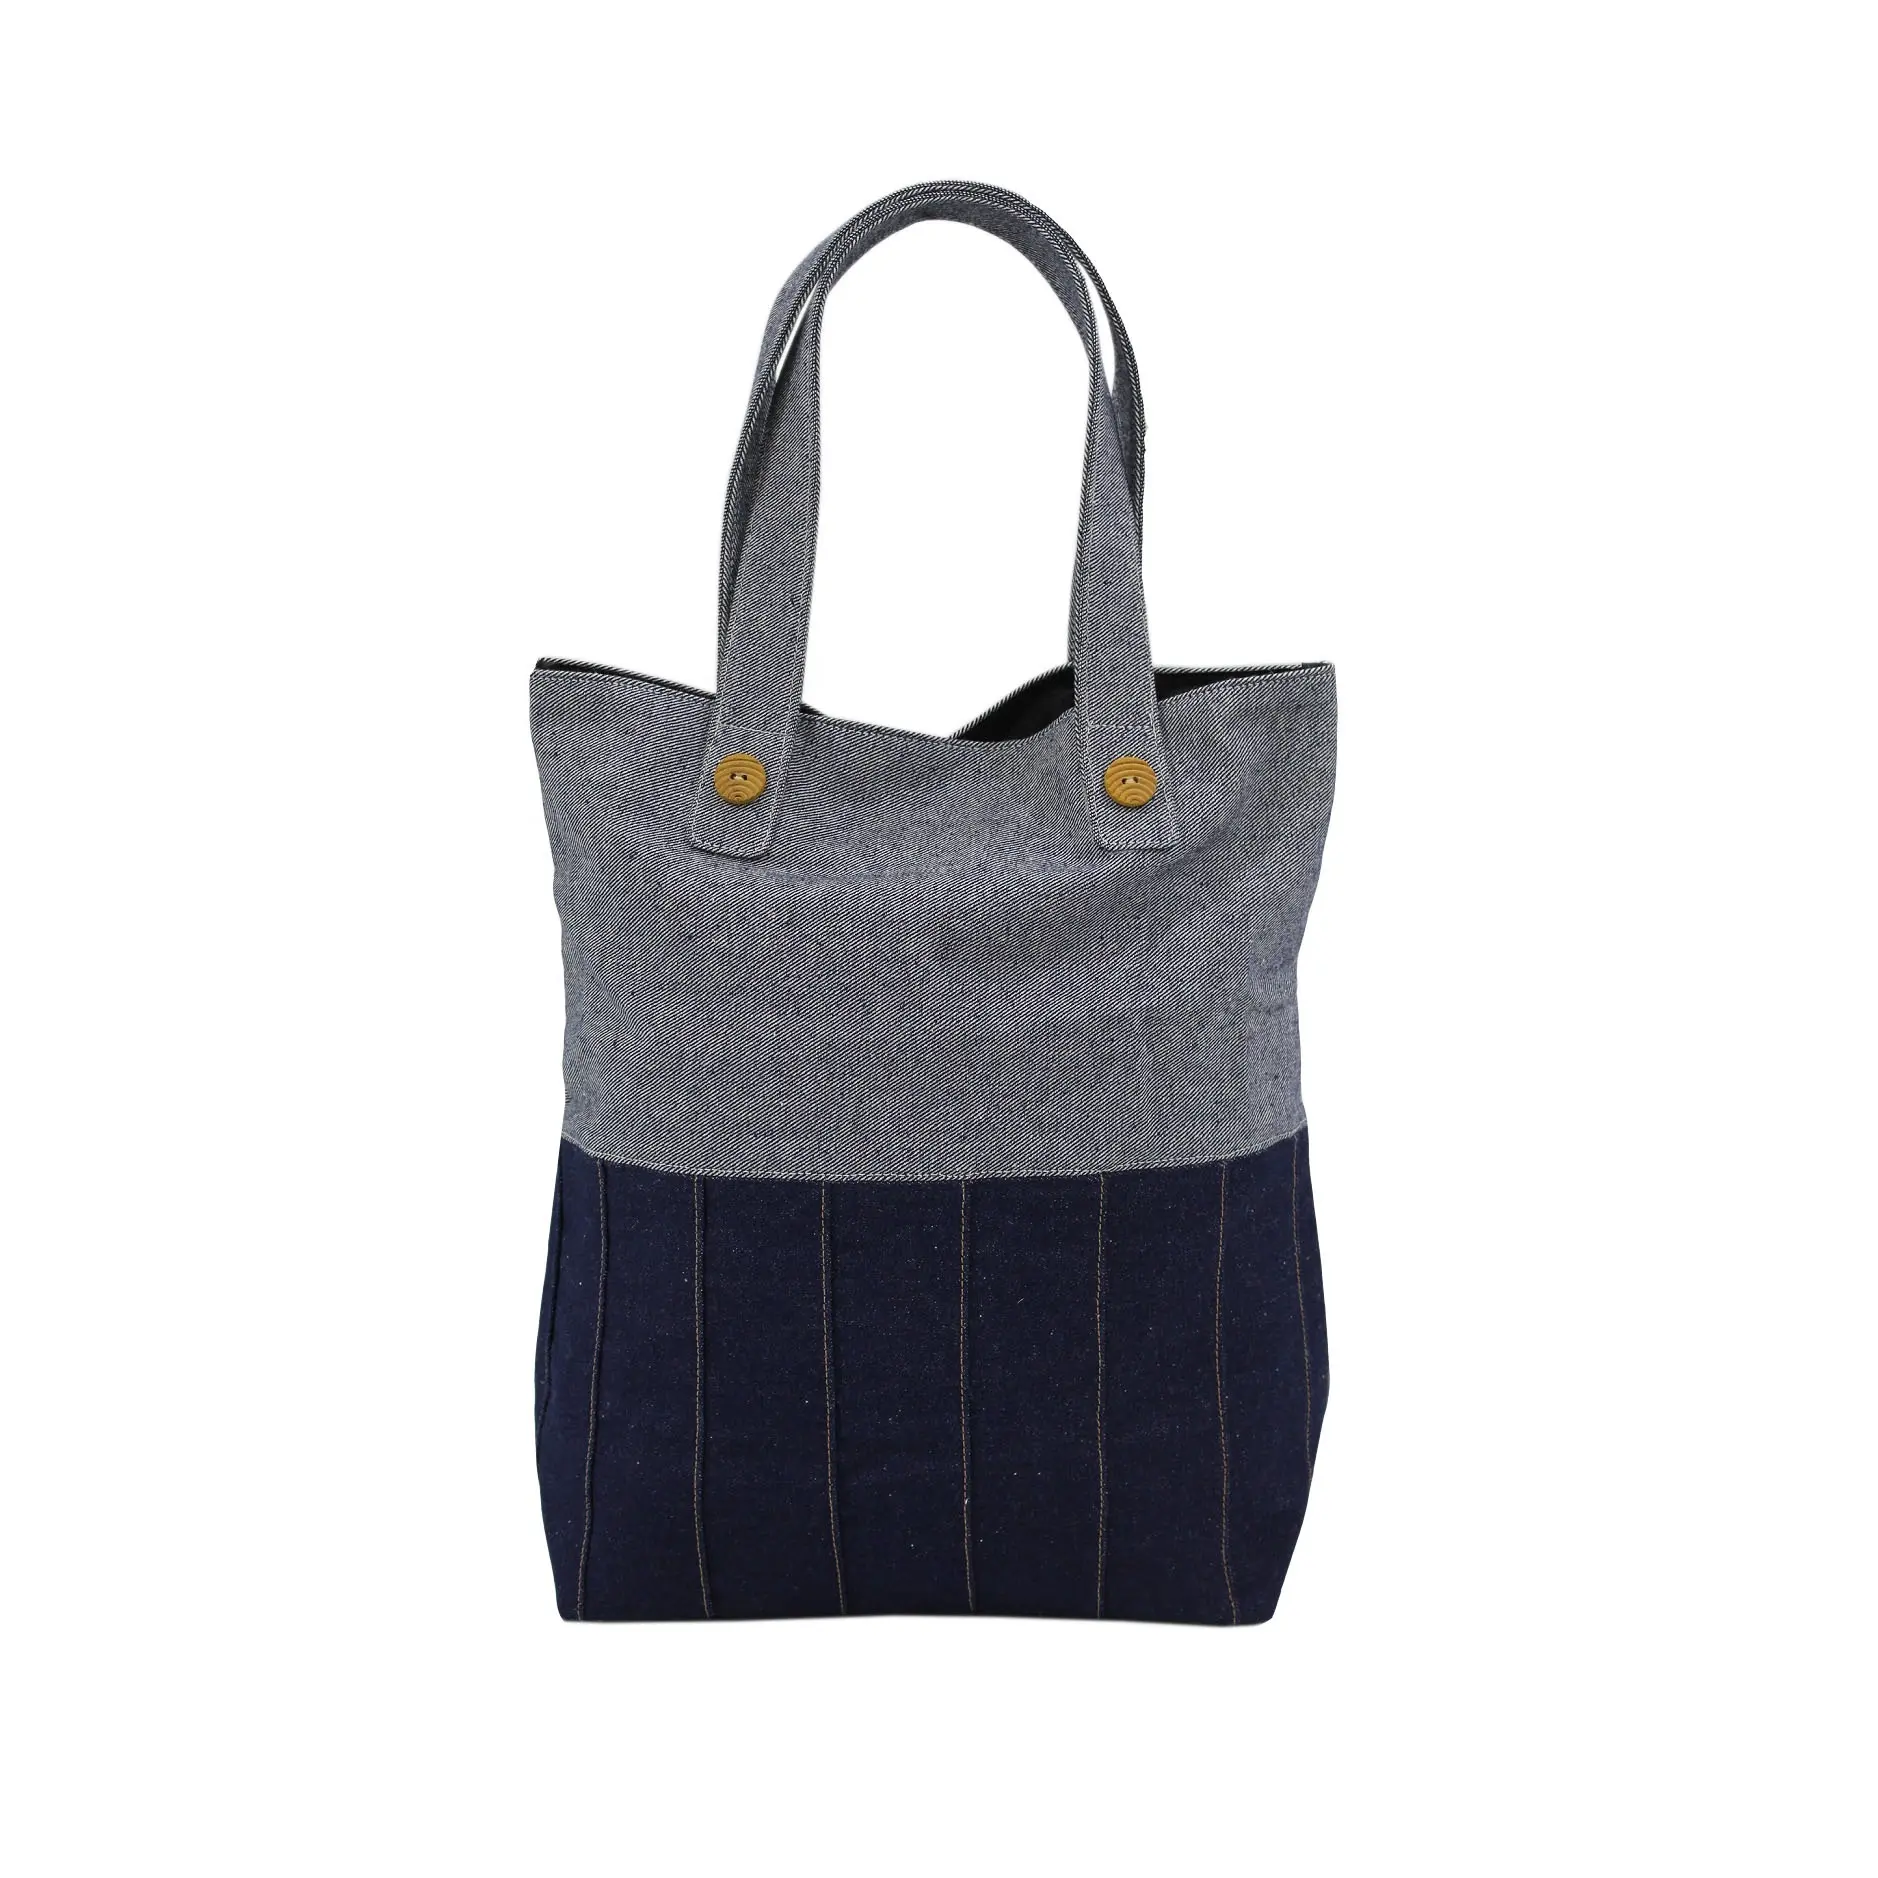 حقيبة جينز من الدنيم بسعر الجملة للبيع المباشر من المصنع بتصميم حصري للفتيات والنساء والأطفال